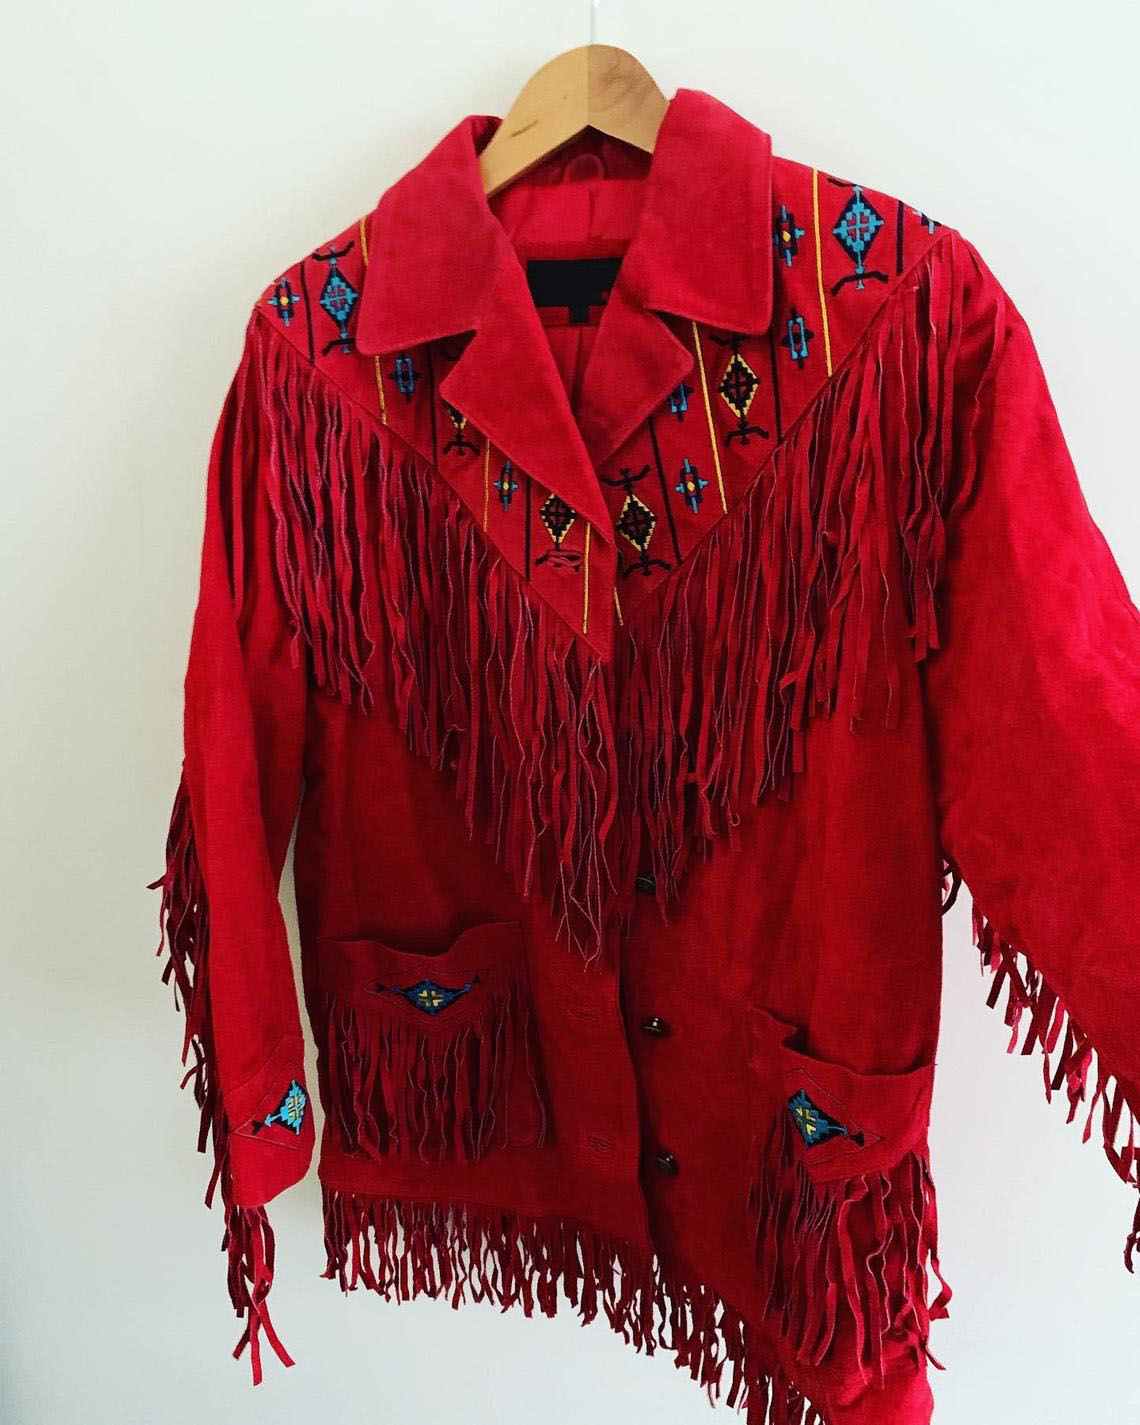 Vintage 1970's Fringe Suede Leather Jacket - Maker of Jacket